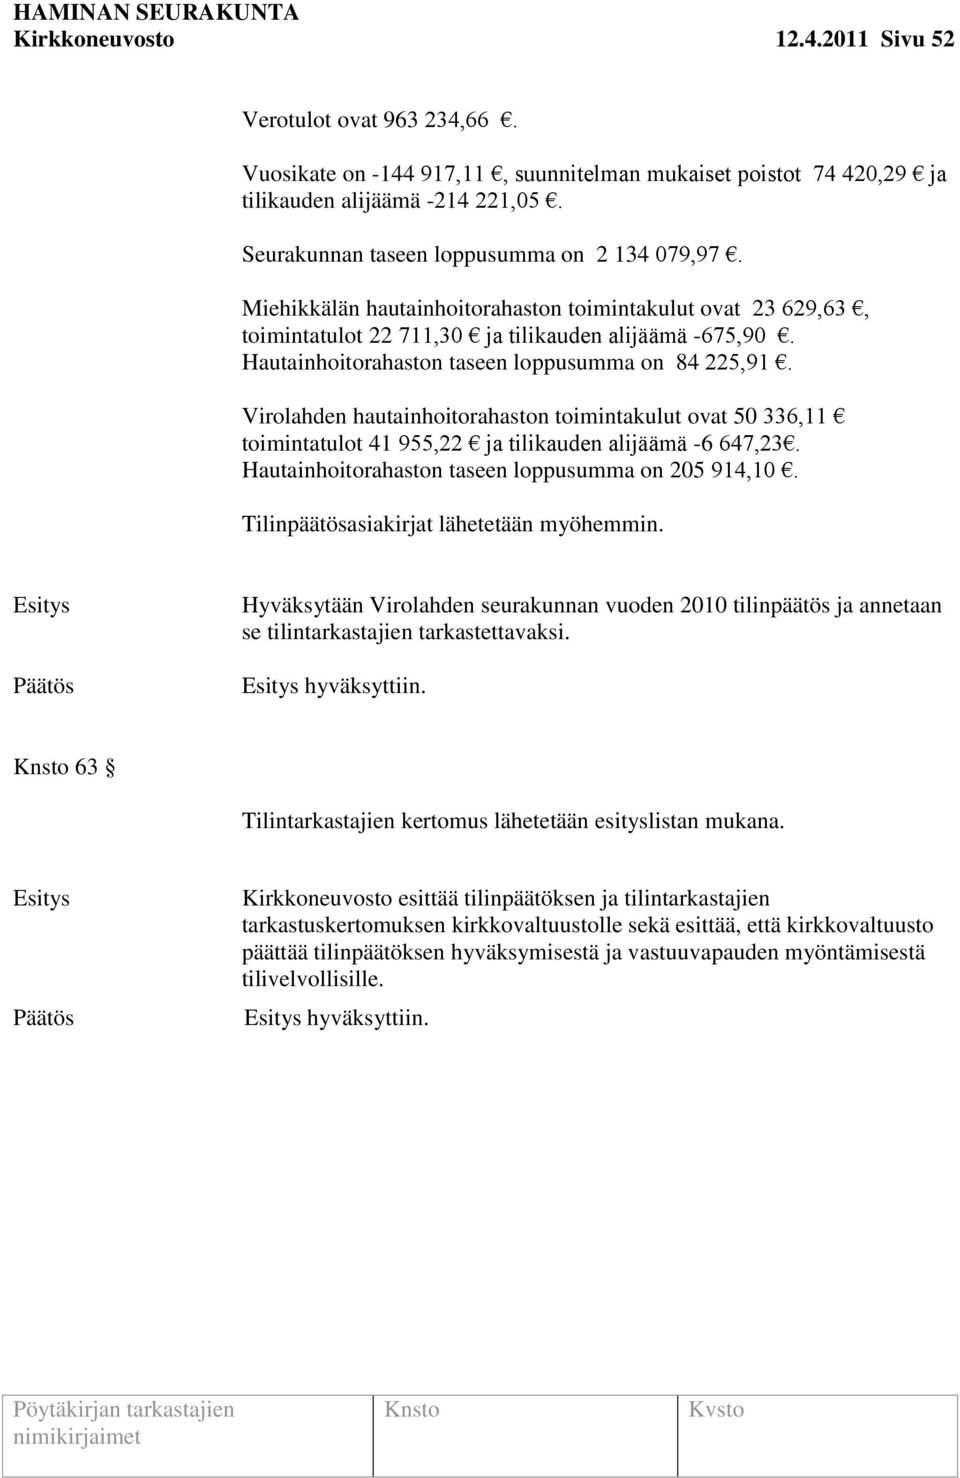 Hautainhoitorahaston taseen loppusumma on 84 225,91. Virolahden hautainhoitorahaston toimintakulut ovat 50 336,11 toimintatulot 41 955,22 ja tilikauden alijäämä -6 647,23.